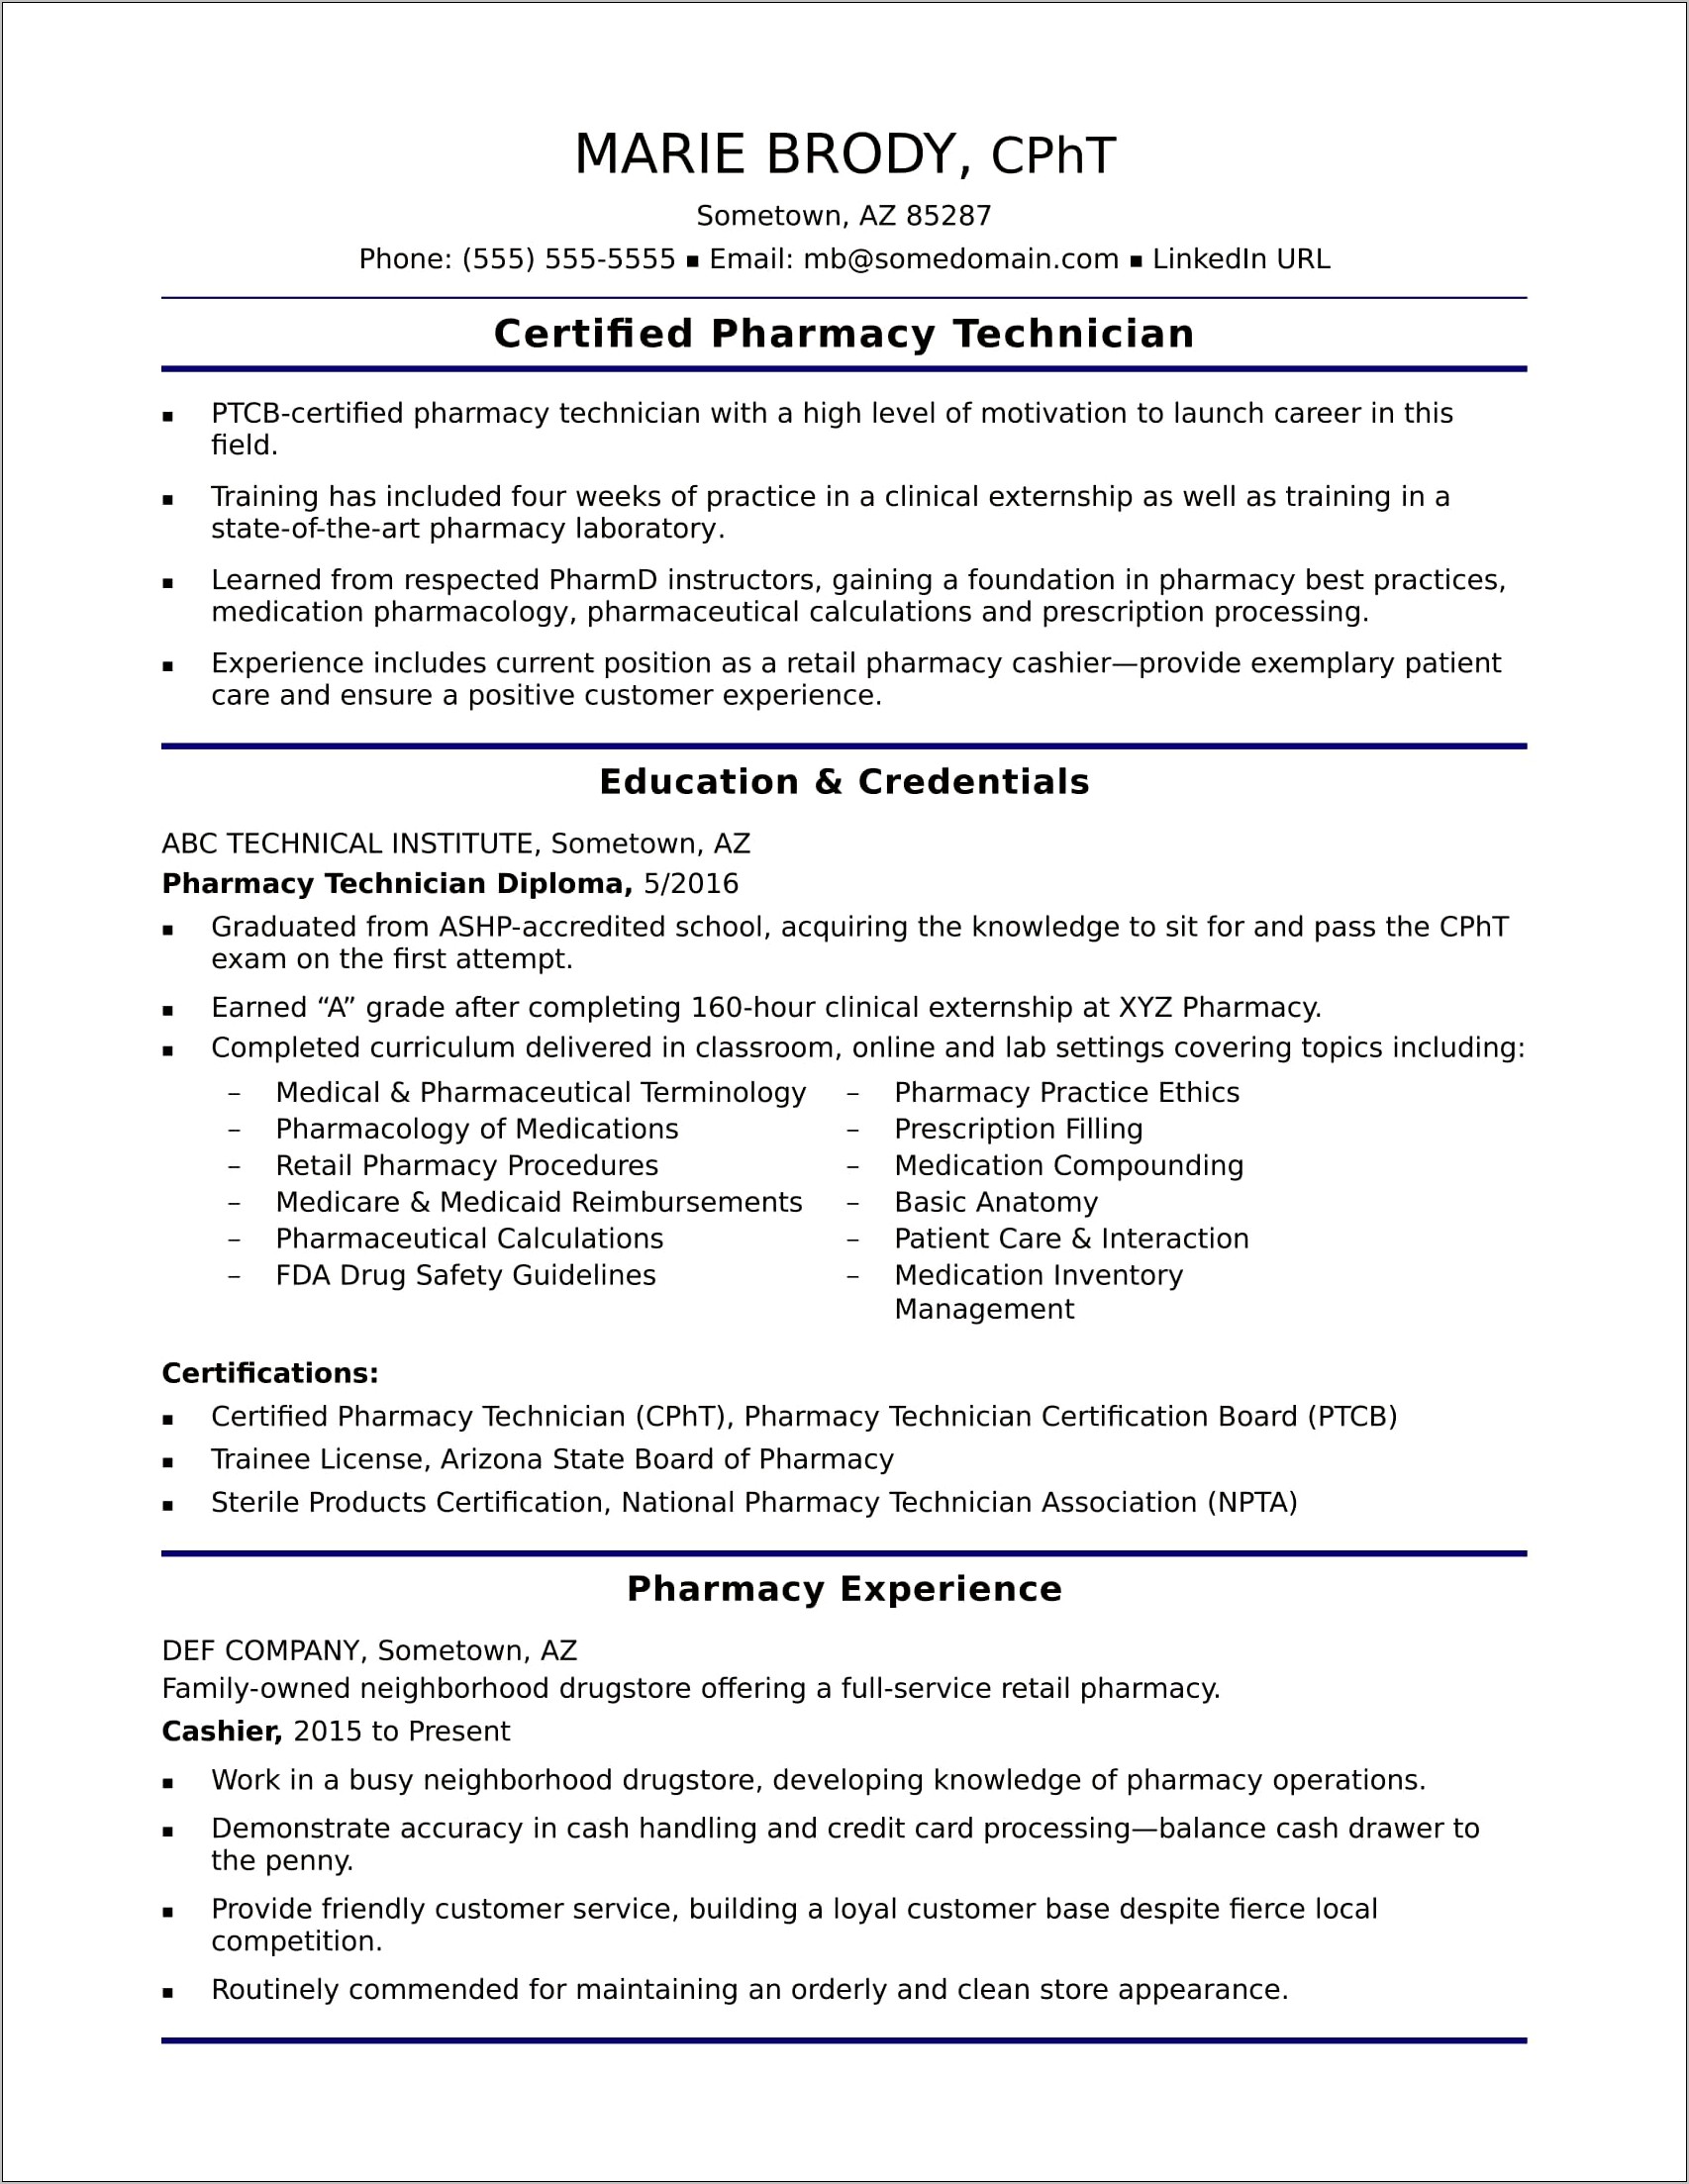 Certified Pharmacy Technician Resume Objective